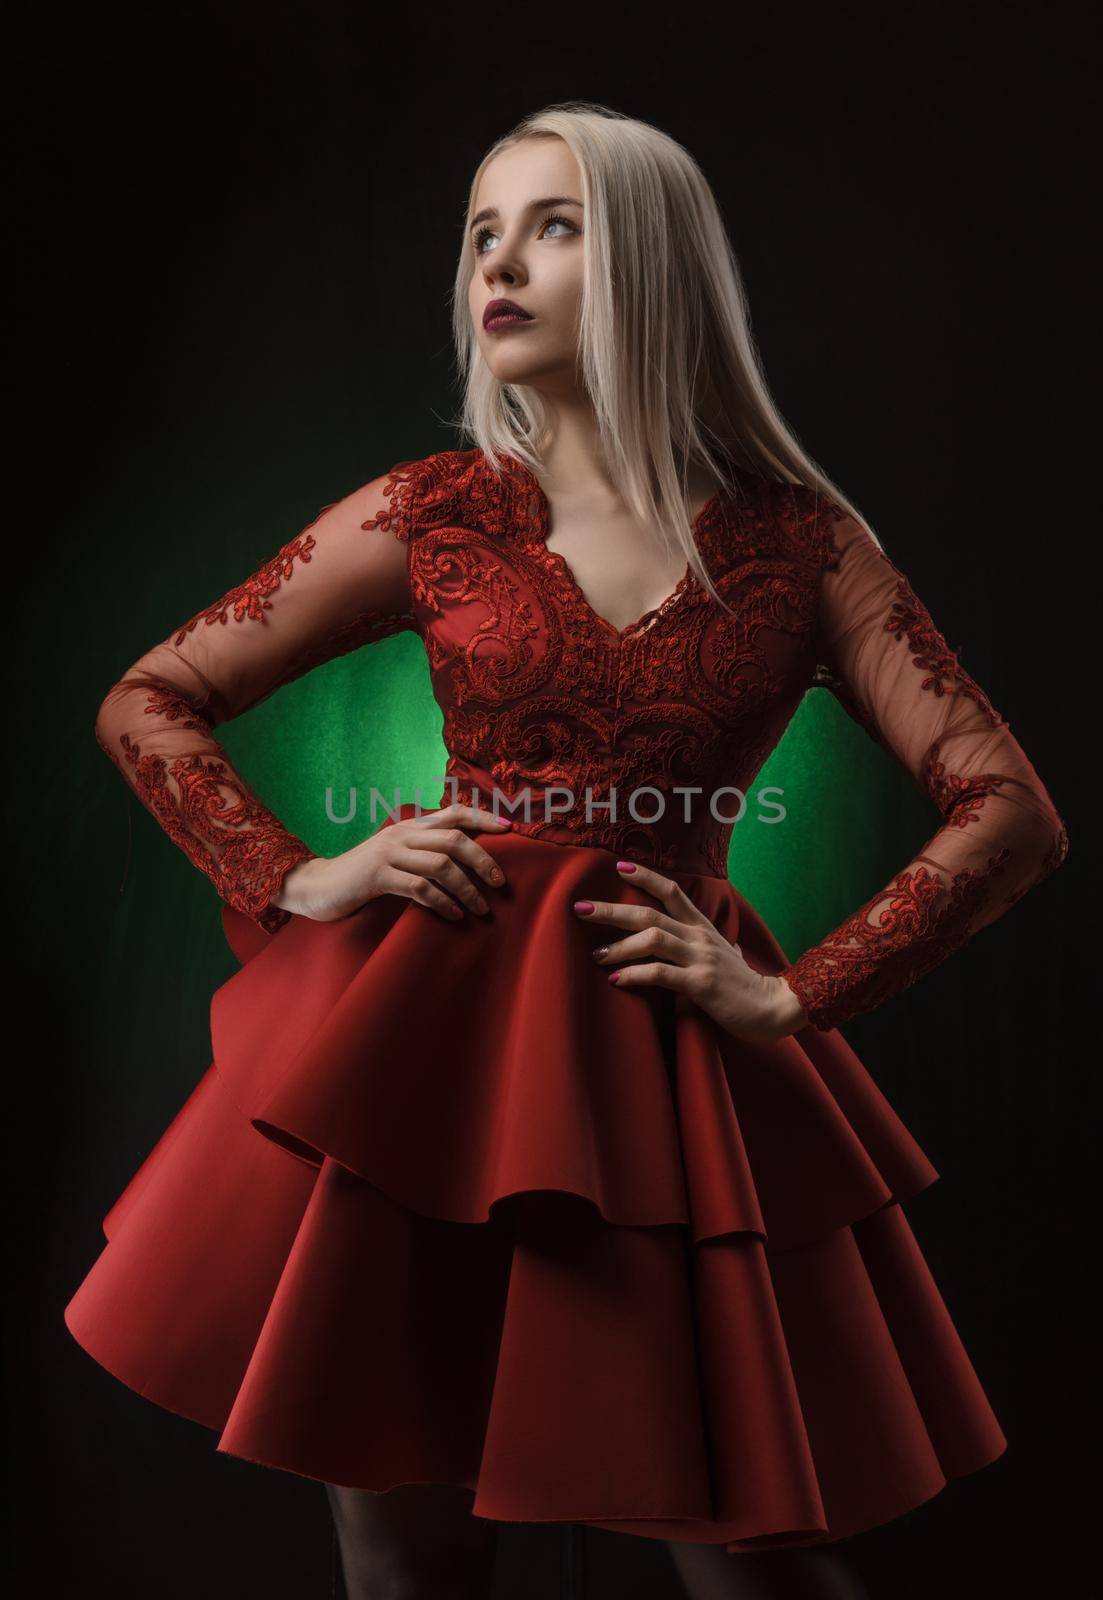 lovely girl in red dress posing on black background in Studio (blonde )